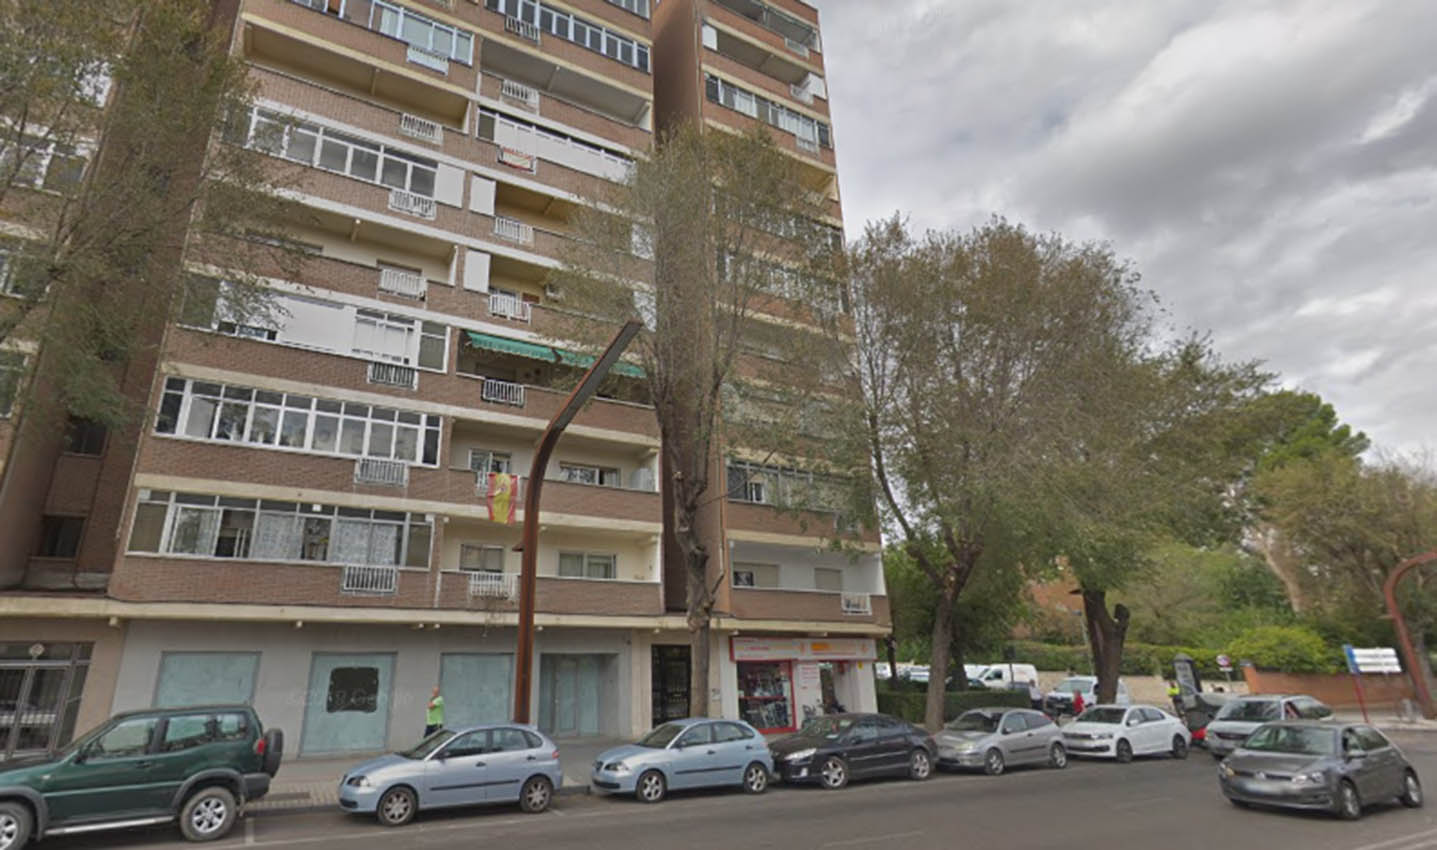 El incendio se ha producido en una vivienda de la segunda planta del edificio situado en el número 40 de la calle Toledo, en Guadalajara.